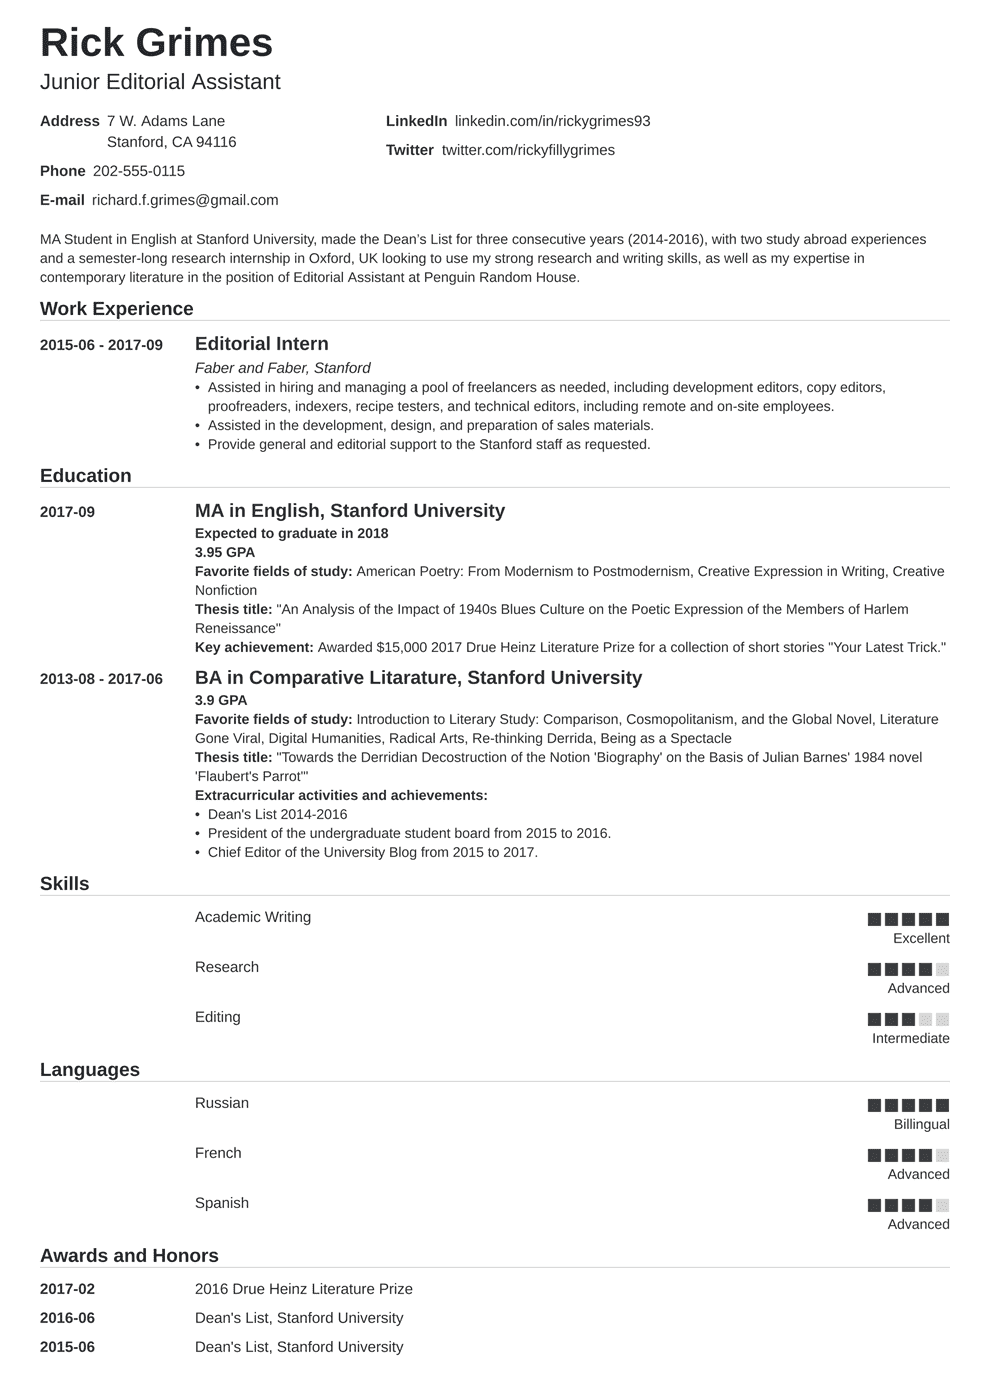 Buy make it simple resume